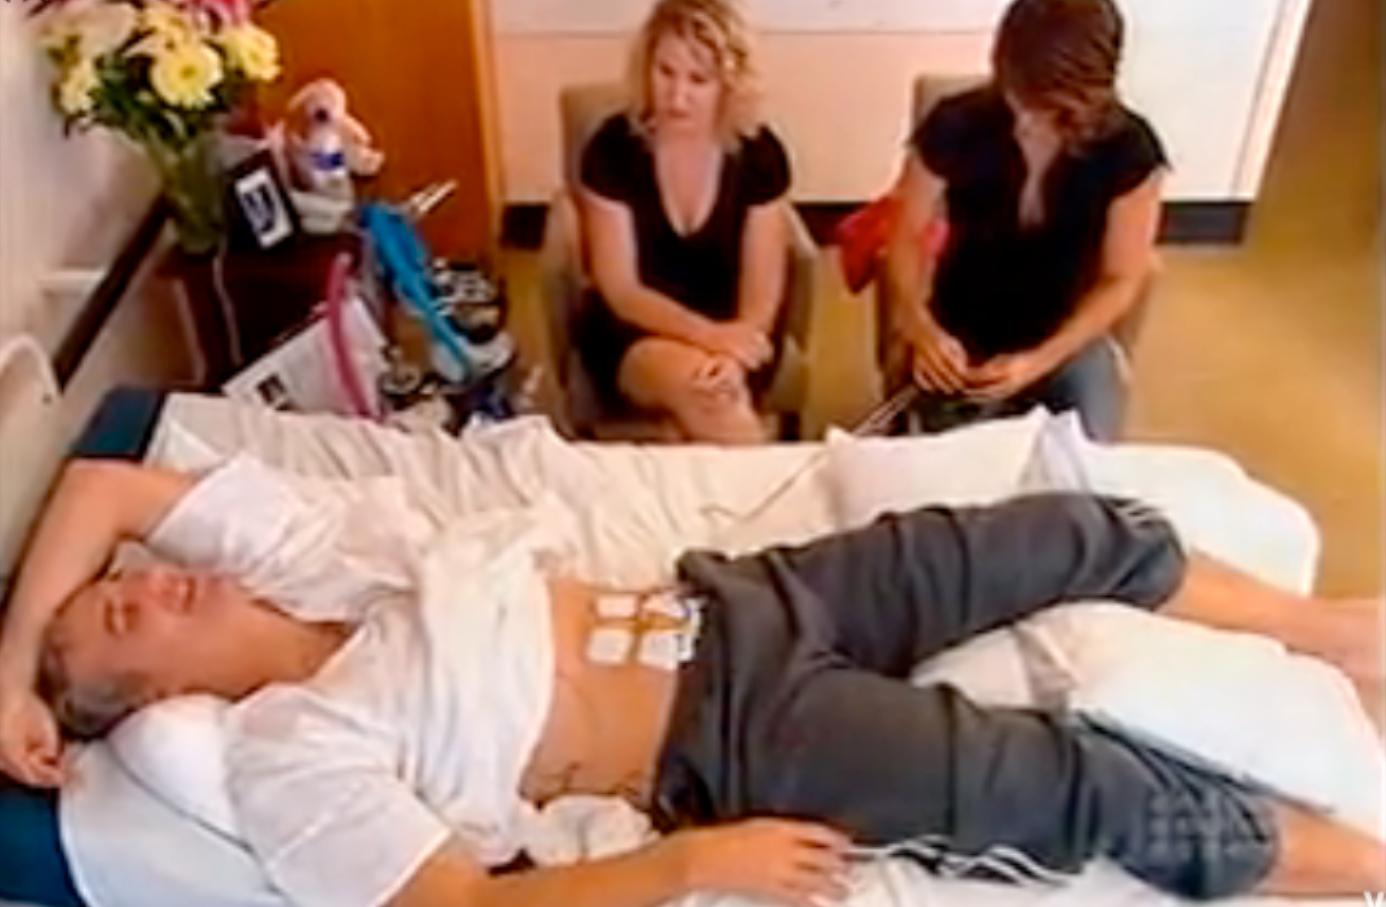 Läkaren Andrew Rochford testar förlossningsvärkar i australiensiska hälsoprogrammet ”What's Good For You”.